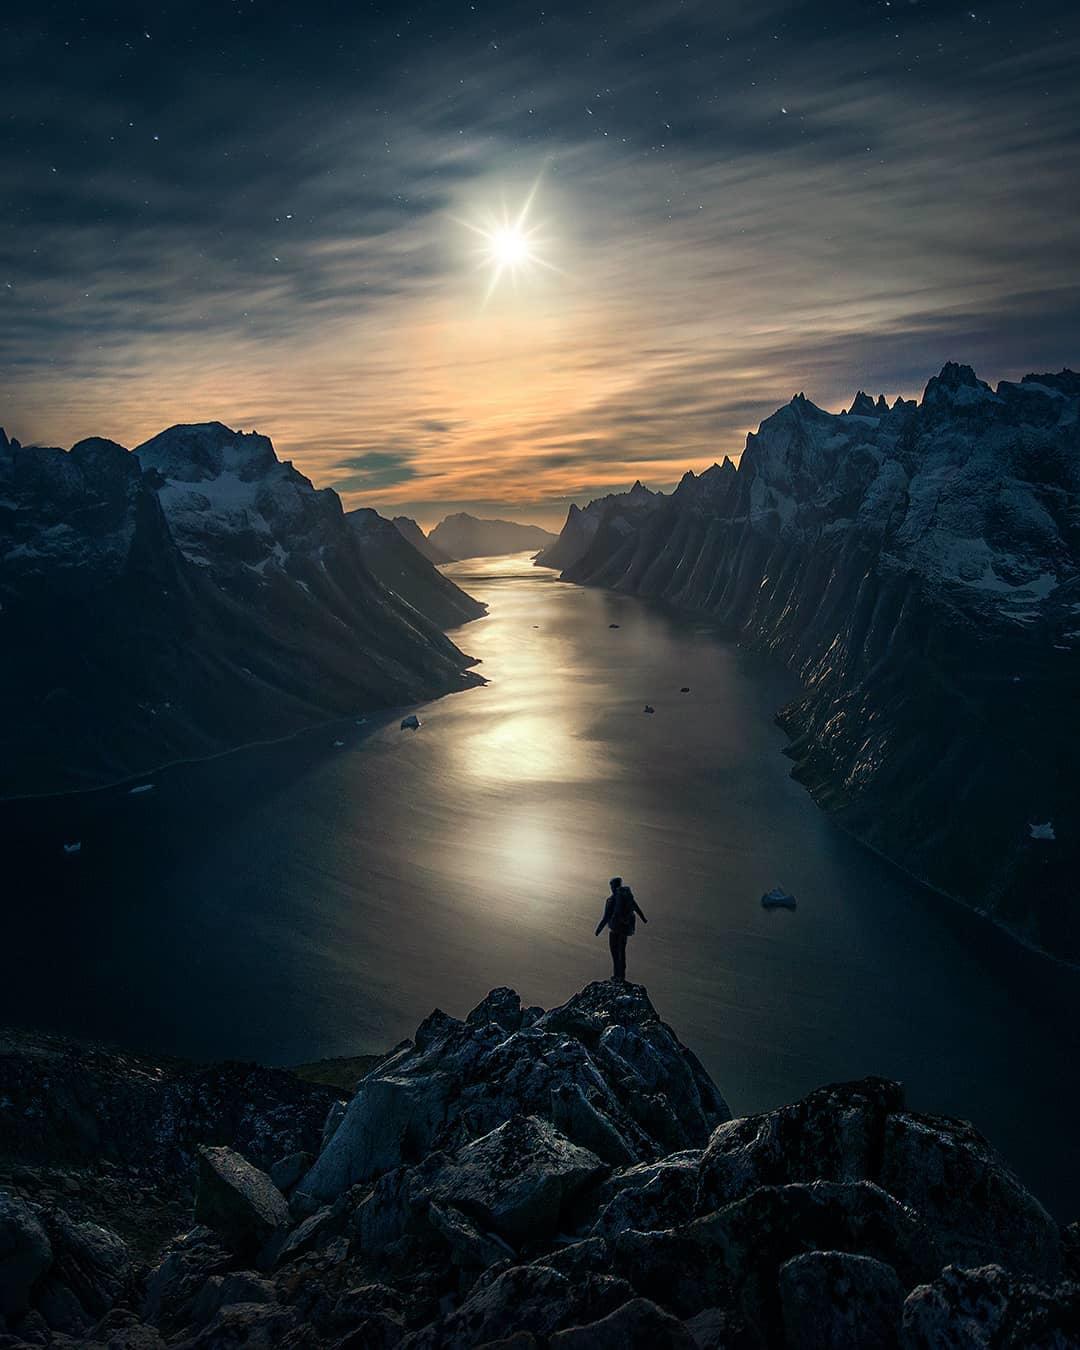  月光之下的格陵兰峡湾，来自摄影师Max Rive。 